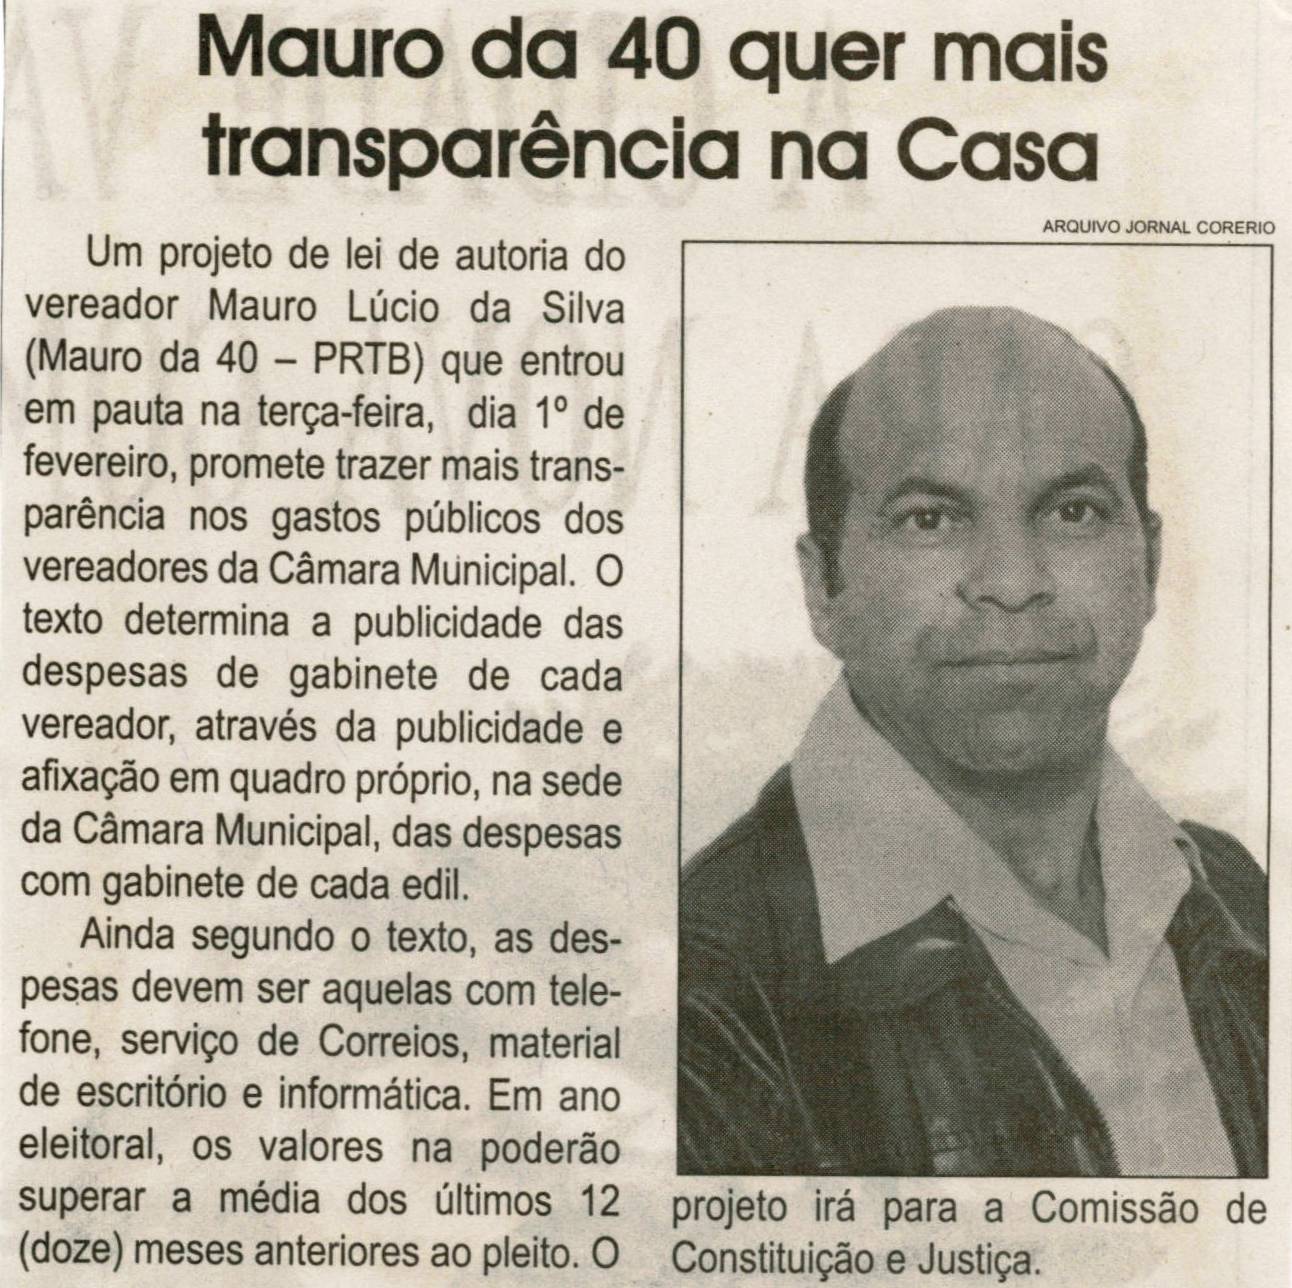 Mauro da 40 quer mais transparência na Casa. Jornal Correio da Cidade, Conselheiro Lafaiete, 05 fev. 2011, p. 04.